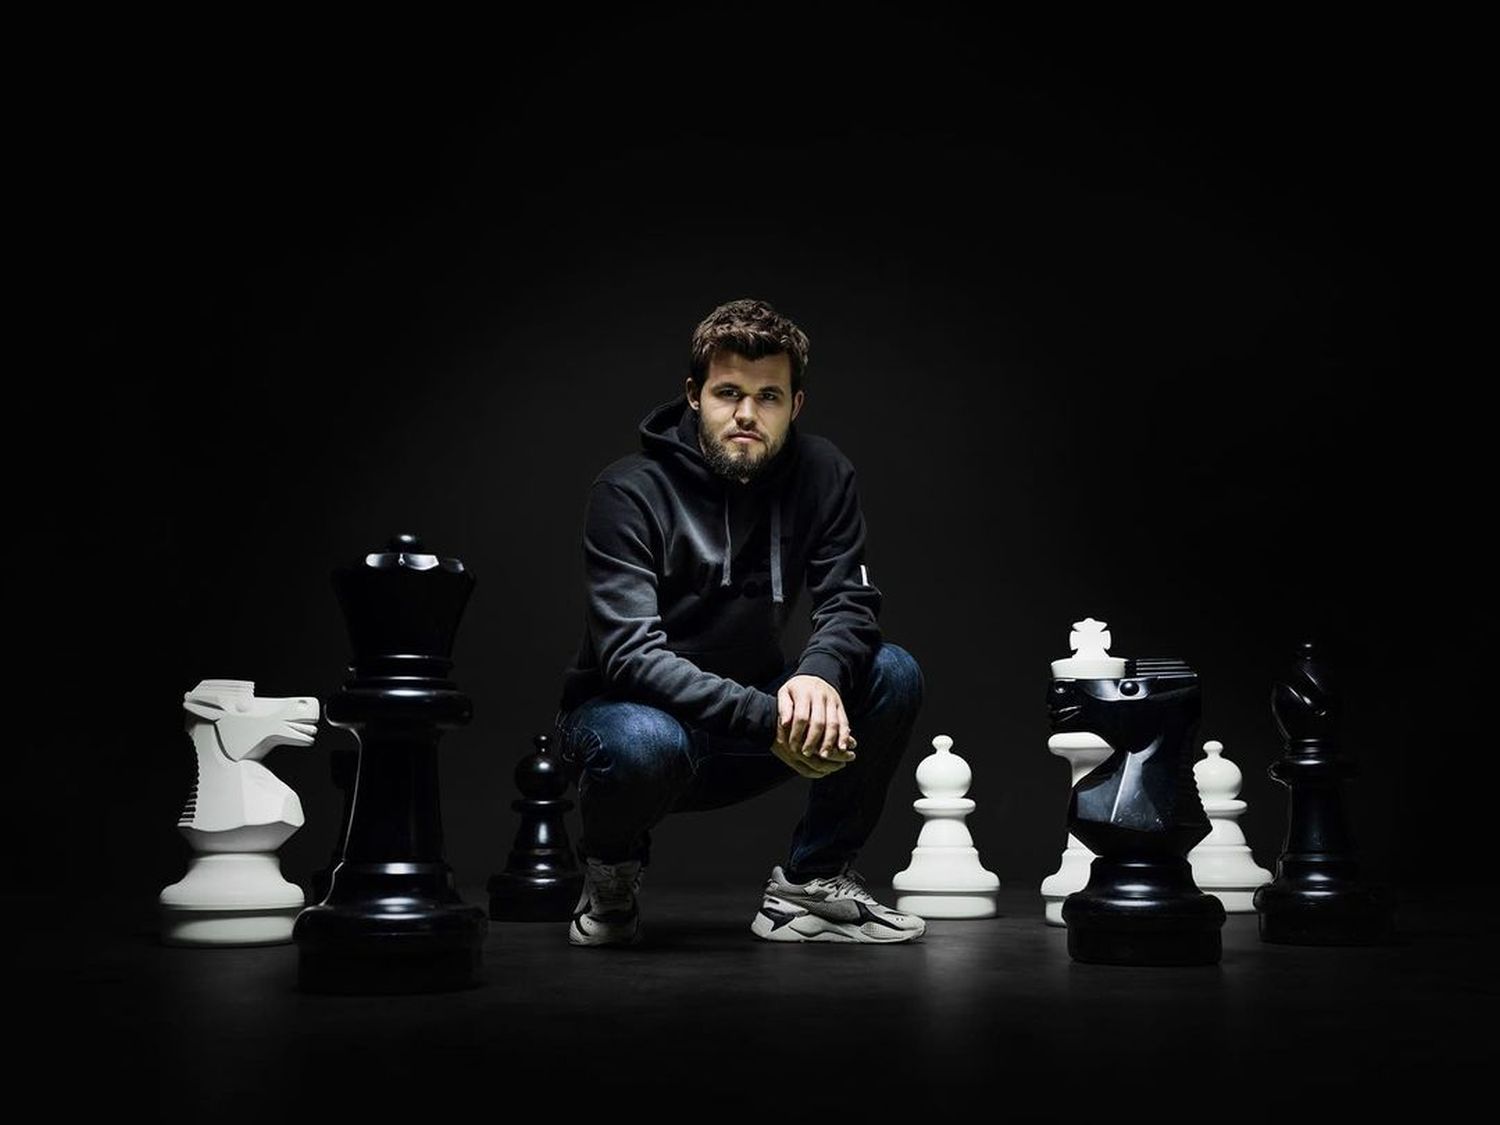 Magnus Carlsen, o melhor jogador de xadrez de sempre, desistiu de